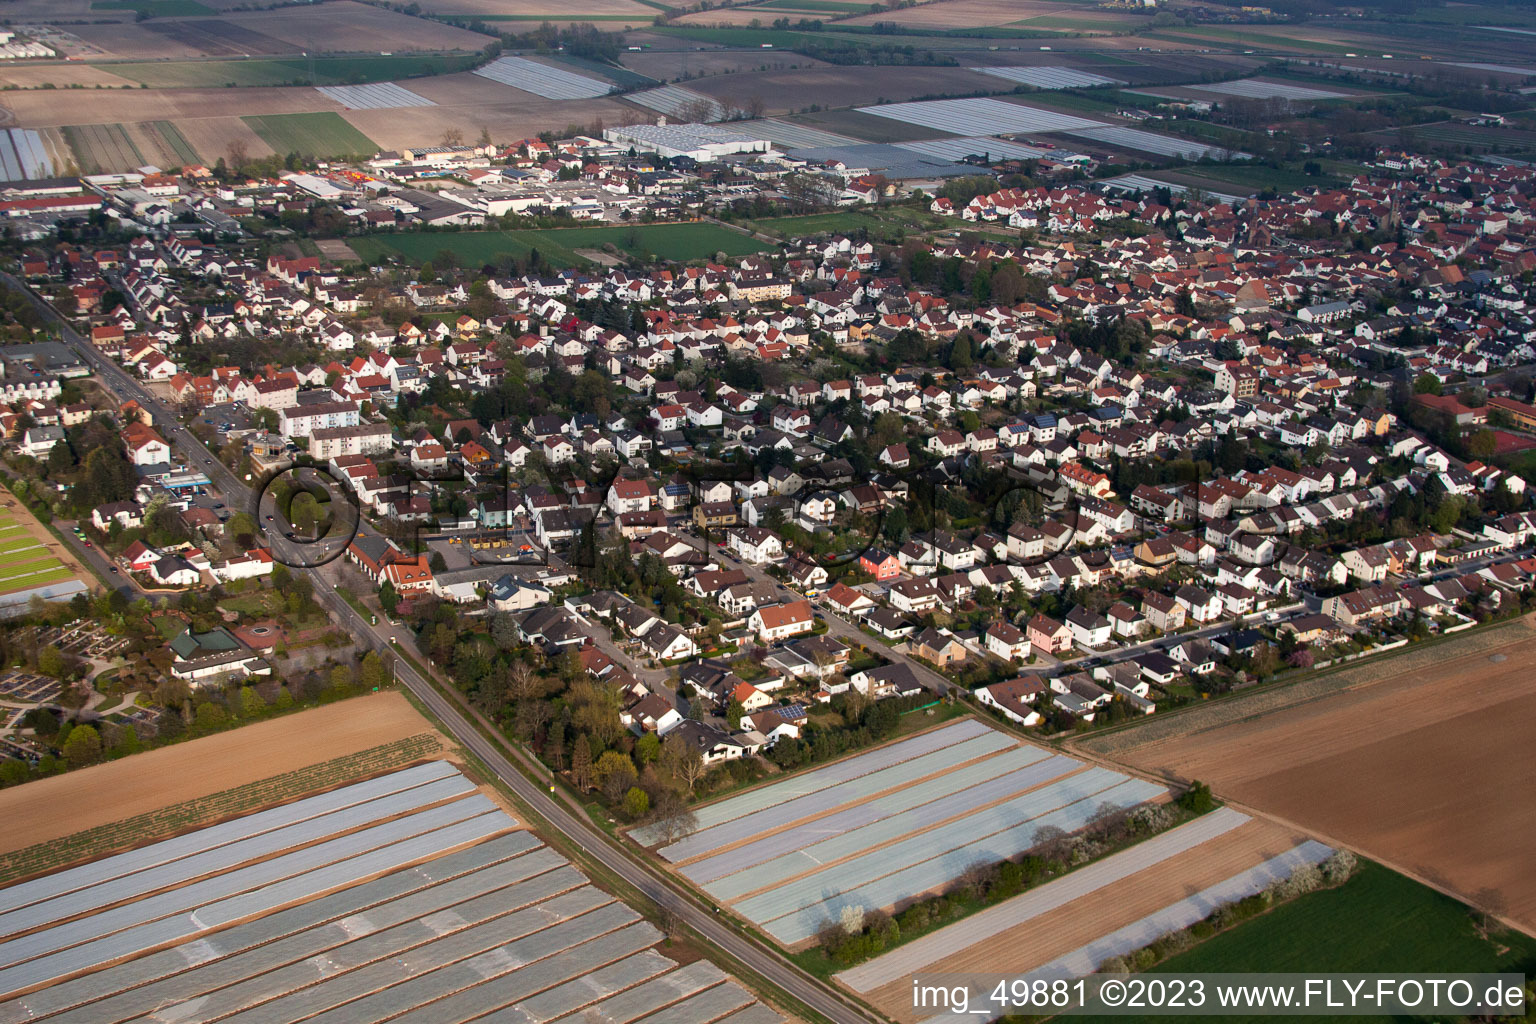 Oblique view of District Dannstadt in Dannstadt-Schauernheim in the state Rhineland-Palatinate, Germany